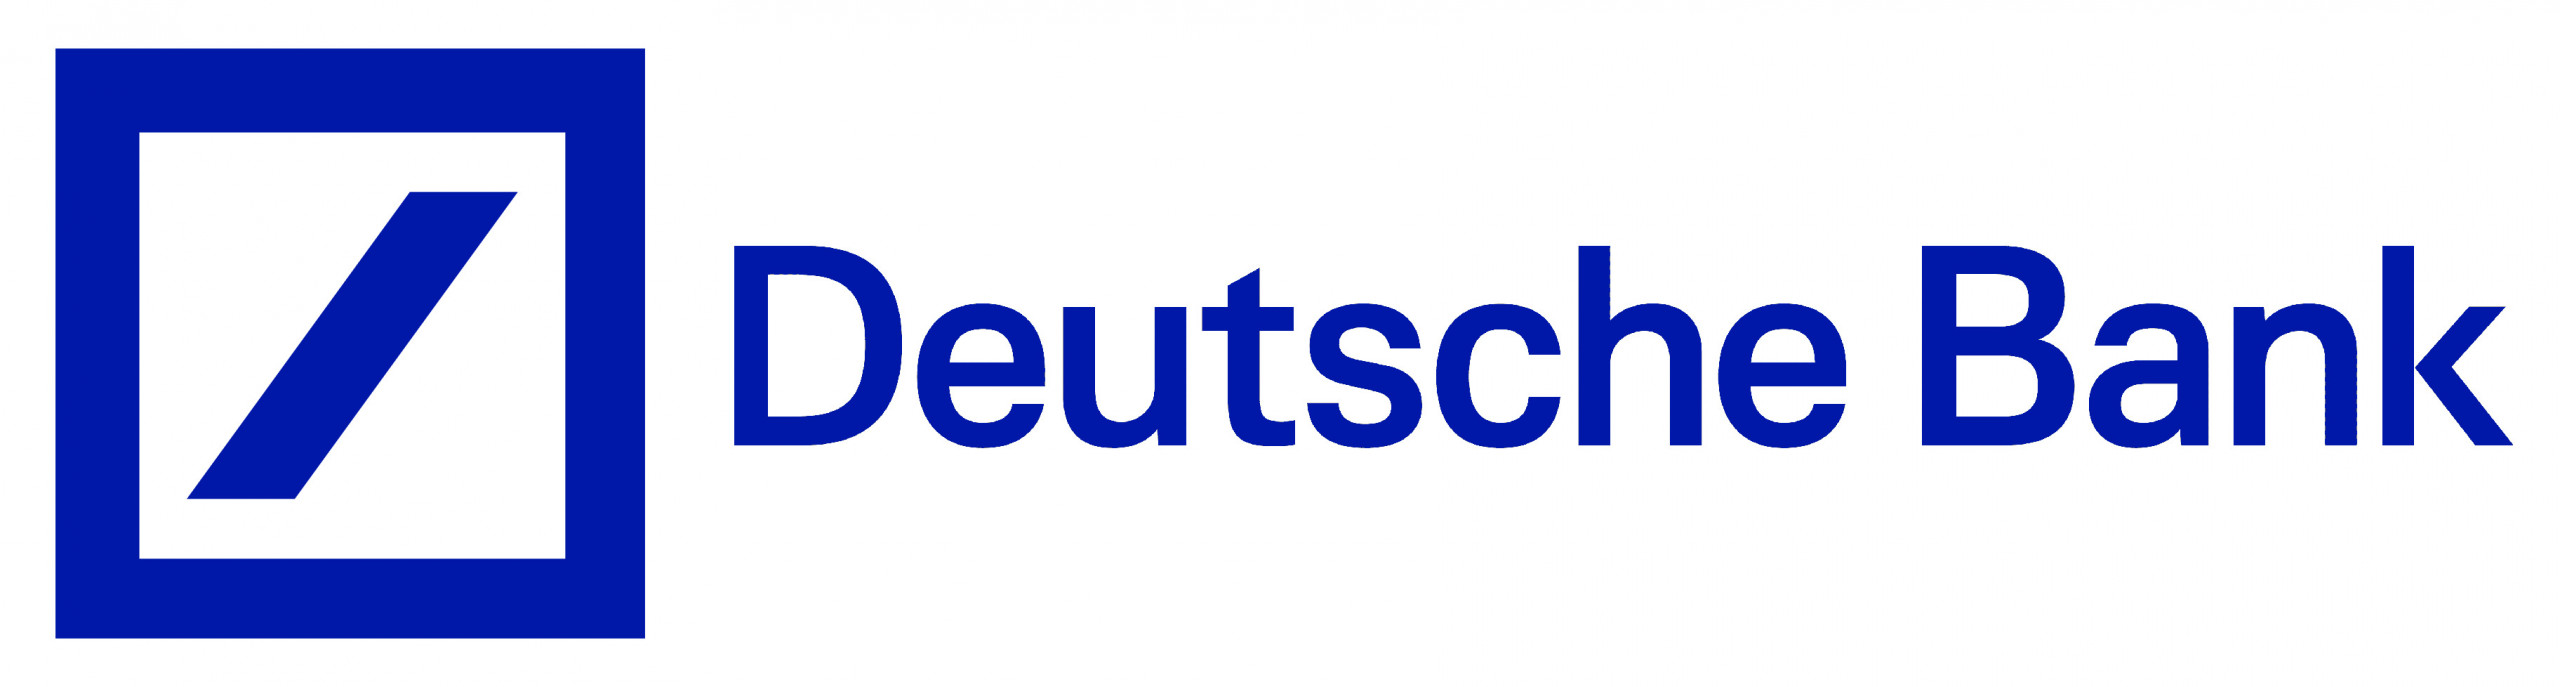 Deutsche-Bank-Logo-scaled